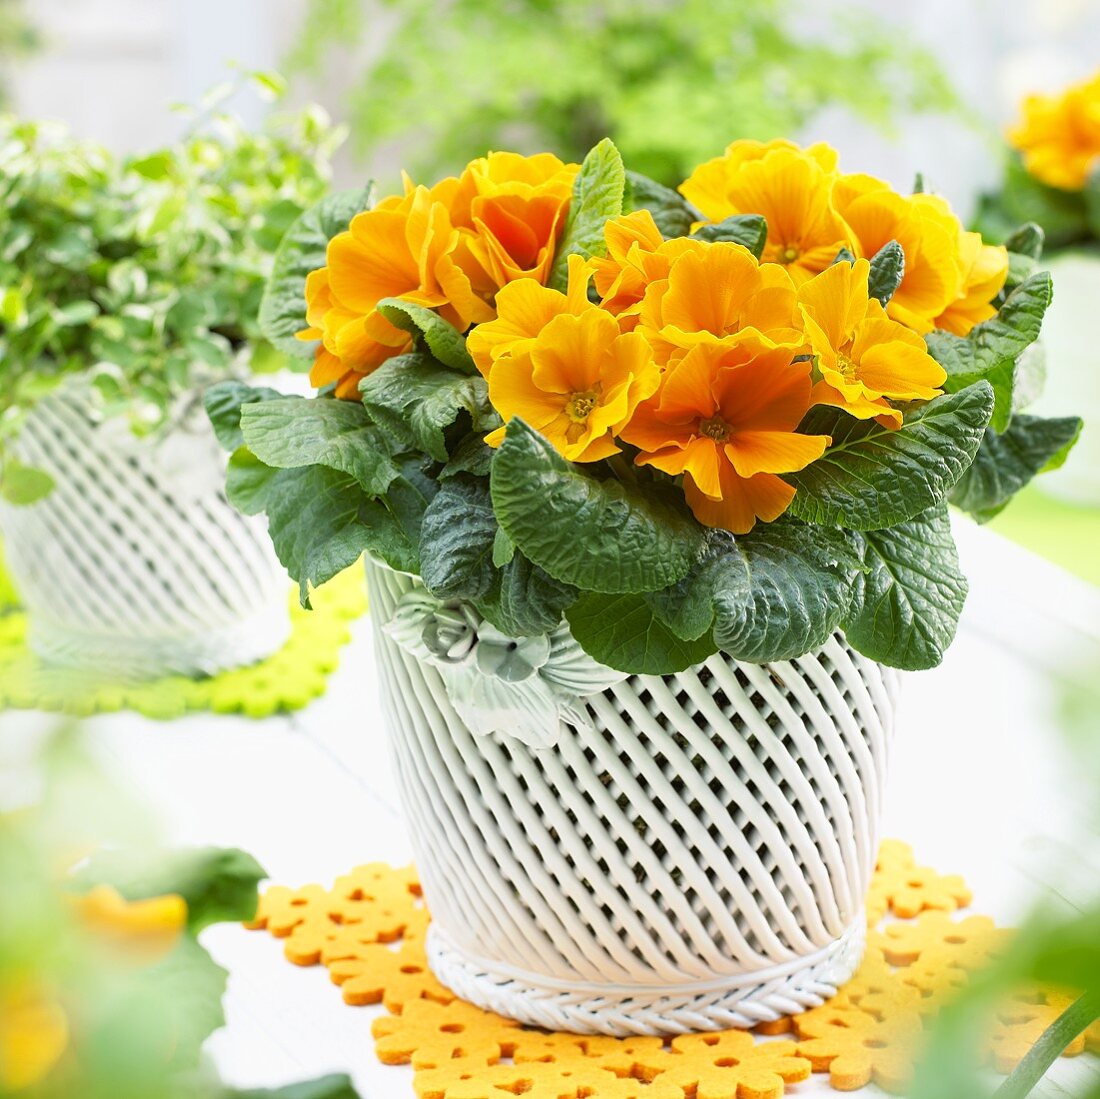 Primulas ('Salome Orange') in flowerpot